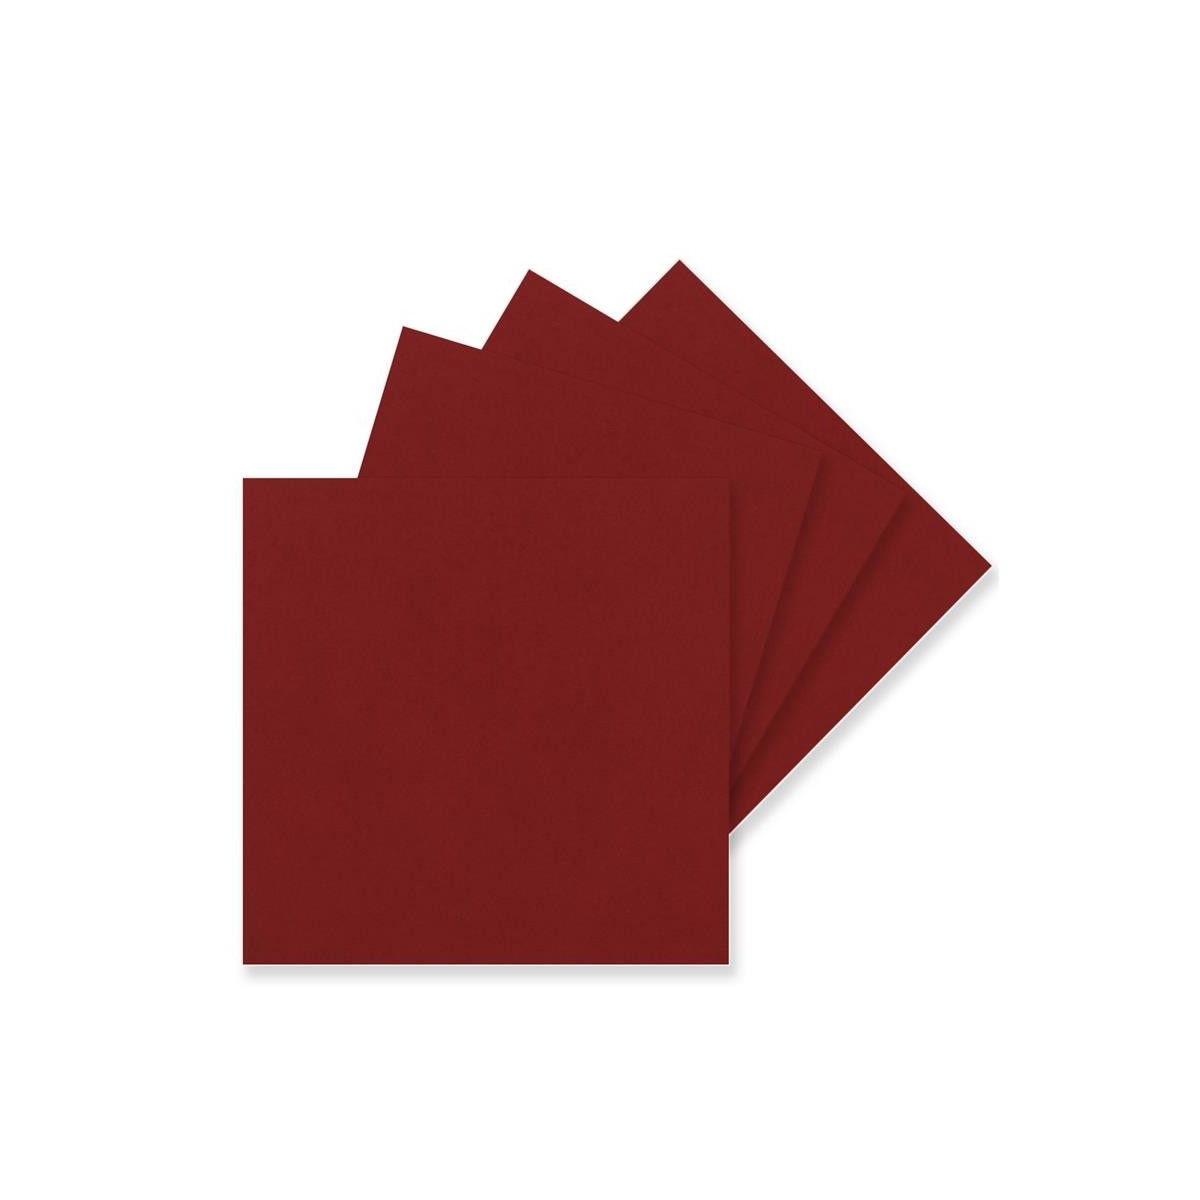 Postkarten Bastelkarton in Ton-Papier Qualität 15 x 15 cm in Naturweiß blanko Bastel-Karten 100 Einzel-Karten Quadratisch - 240 g/m² Weiß 